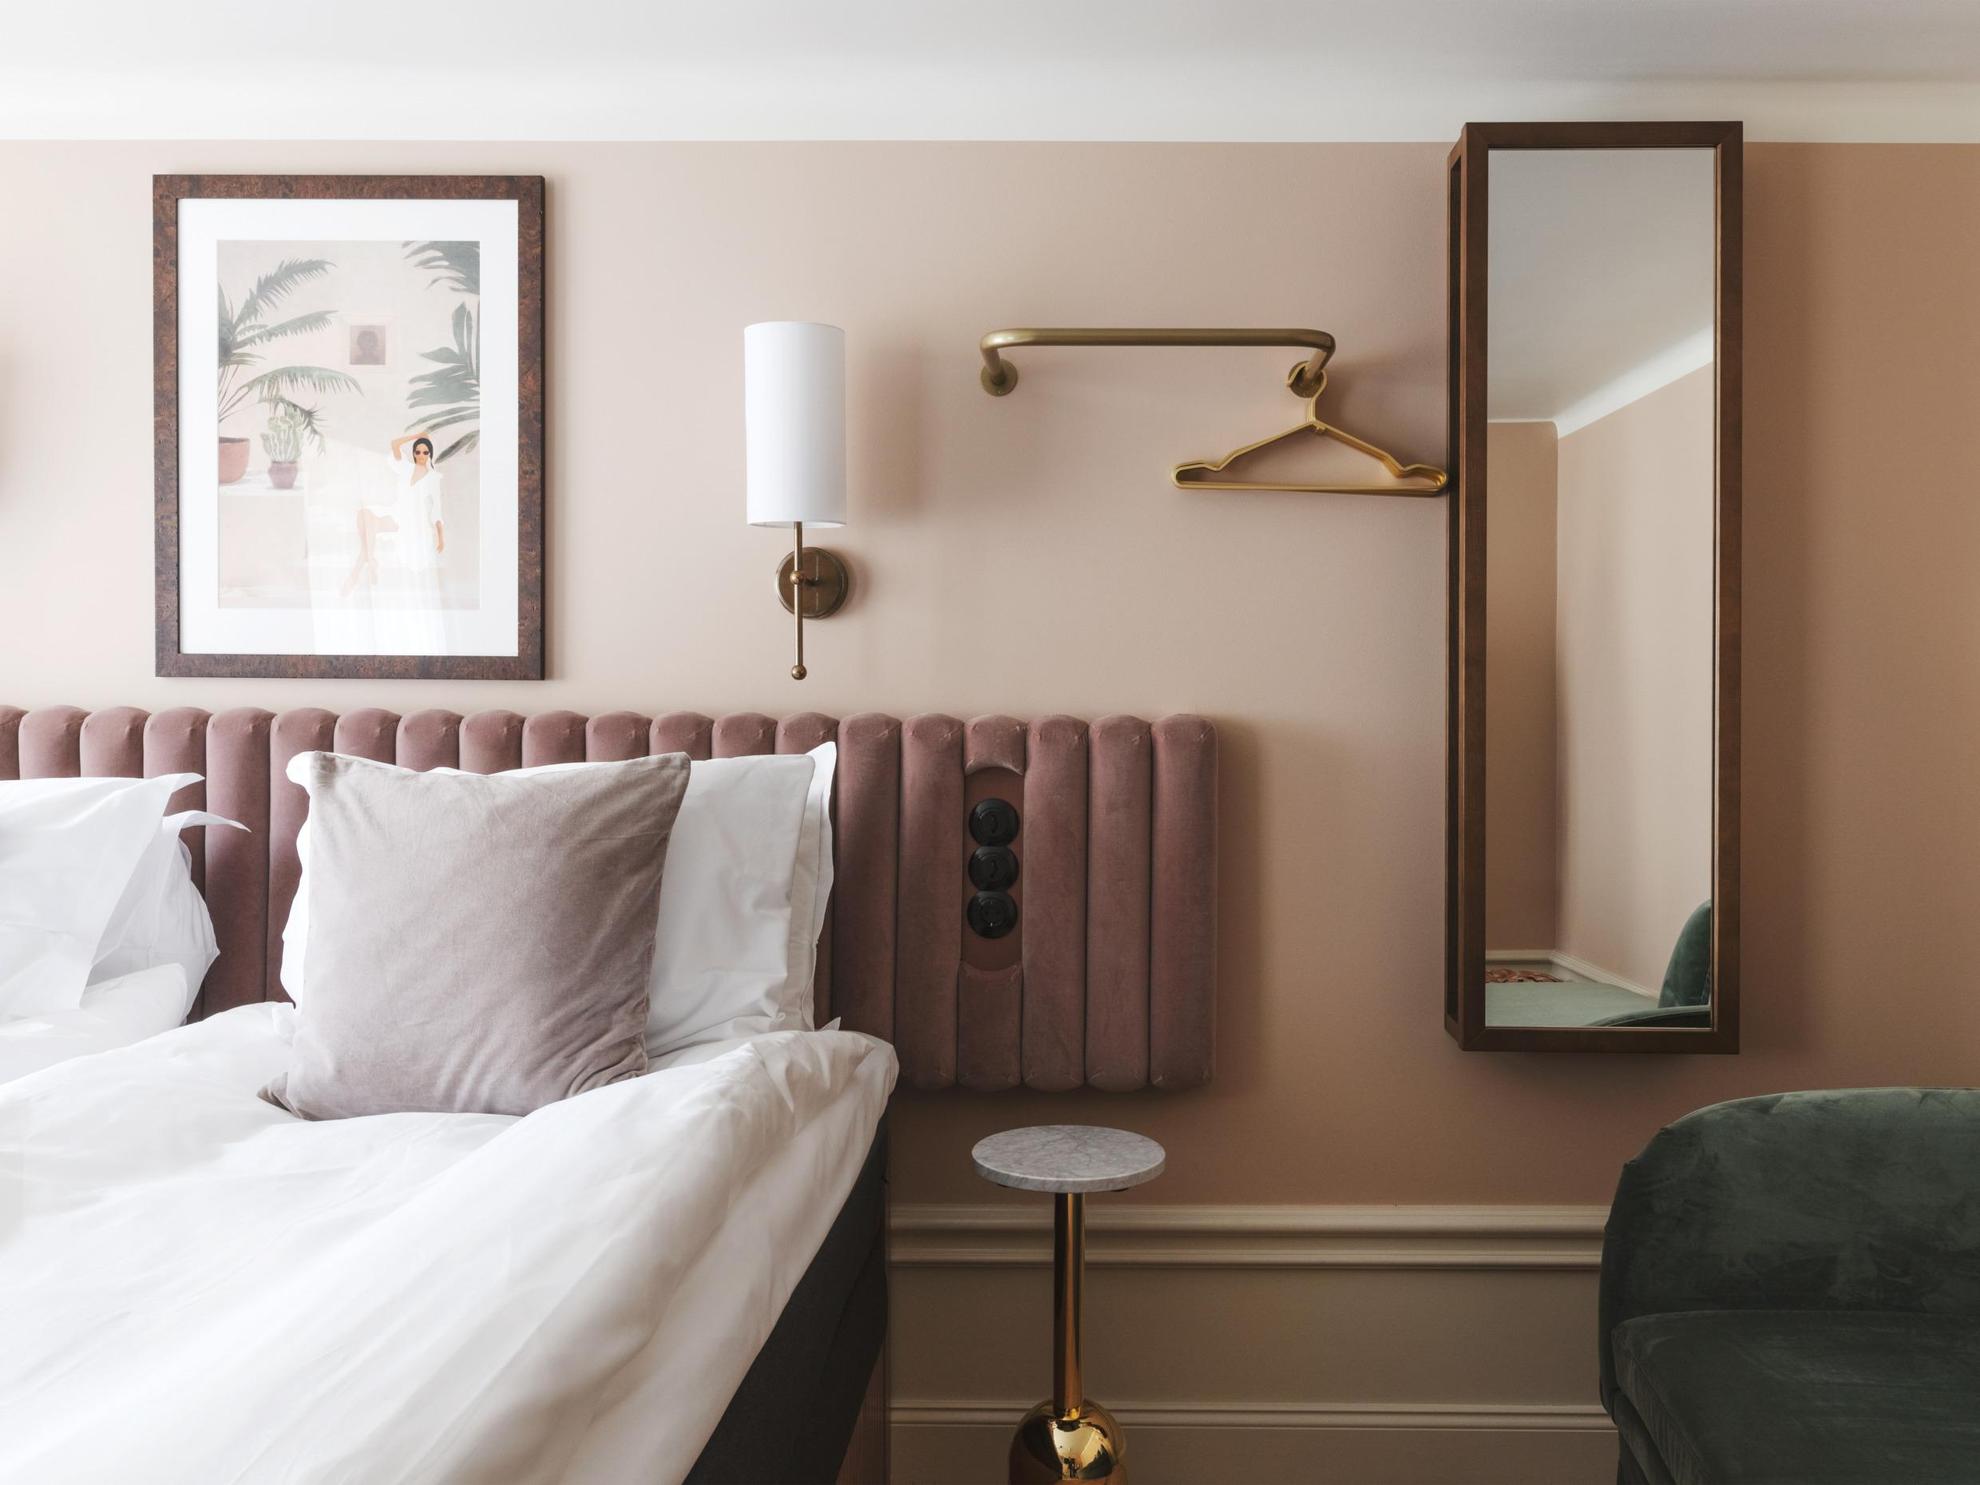 Een hotelkamer met beige geschilderde muren en een wit plafond. Een koperen wandlamp, een schilderij, een spiegel en een kleerhanger sieren de muren naast een tweepersoonsbed.